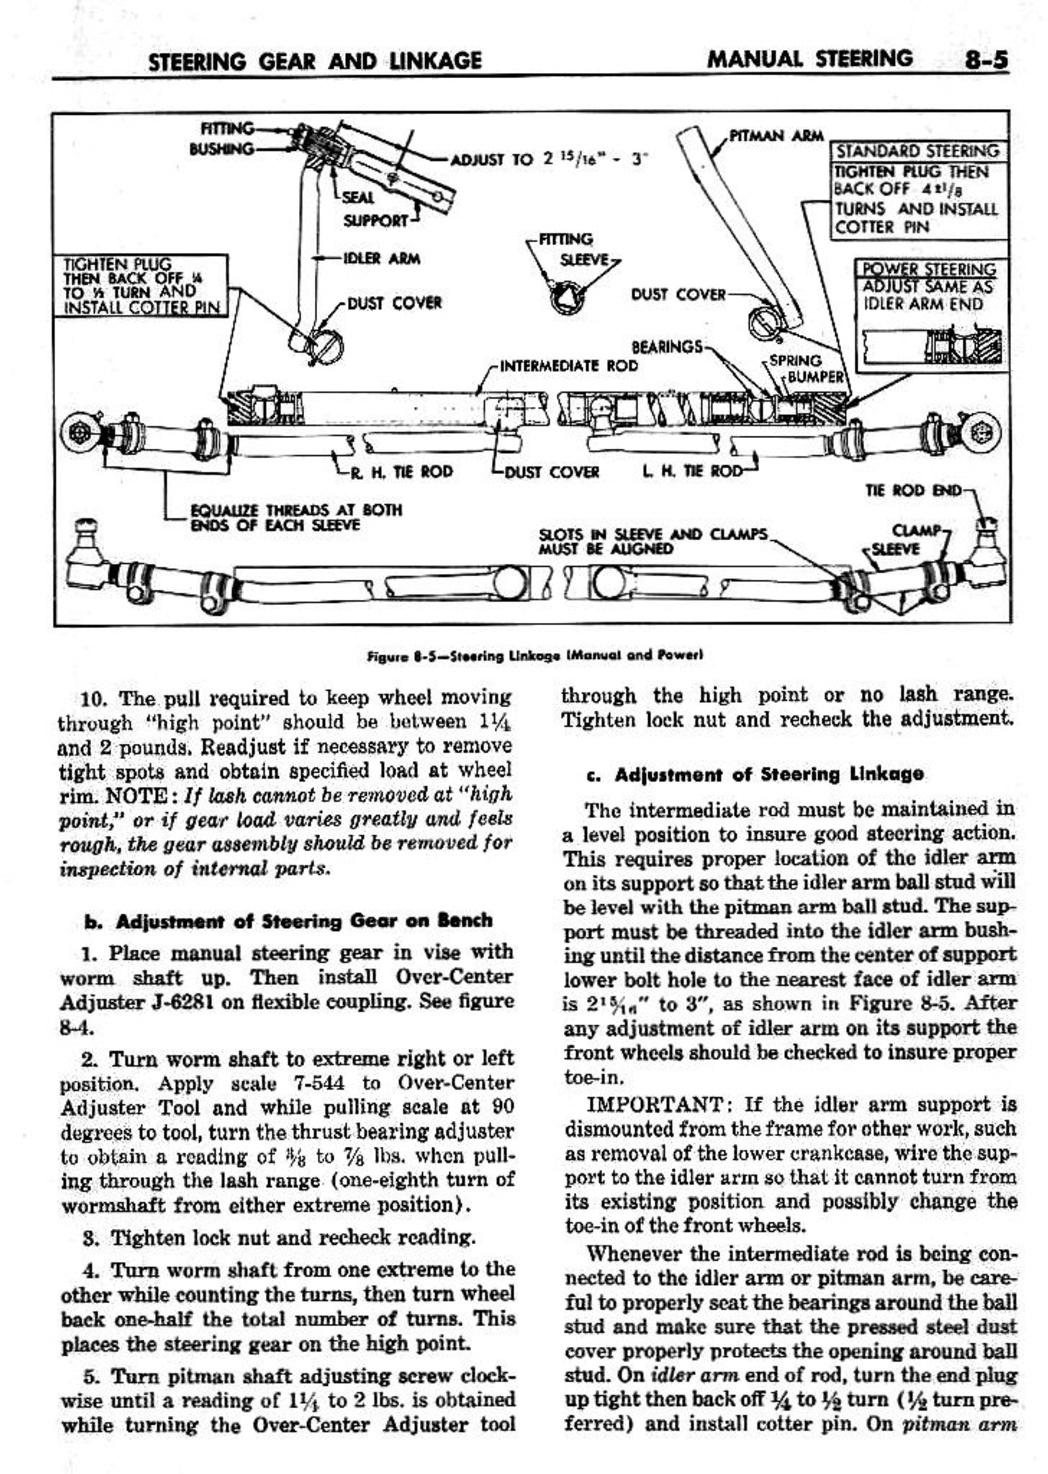 n_09 1959 Buick Shop Manual - Steering-005-005.jpg